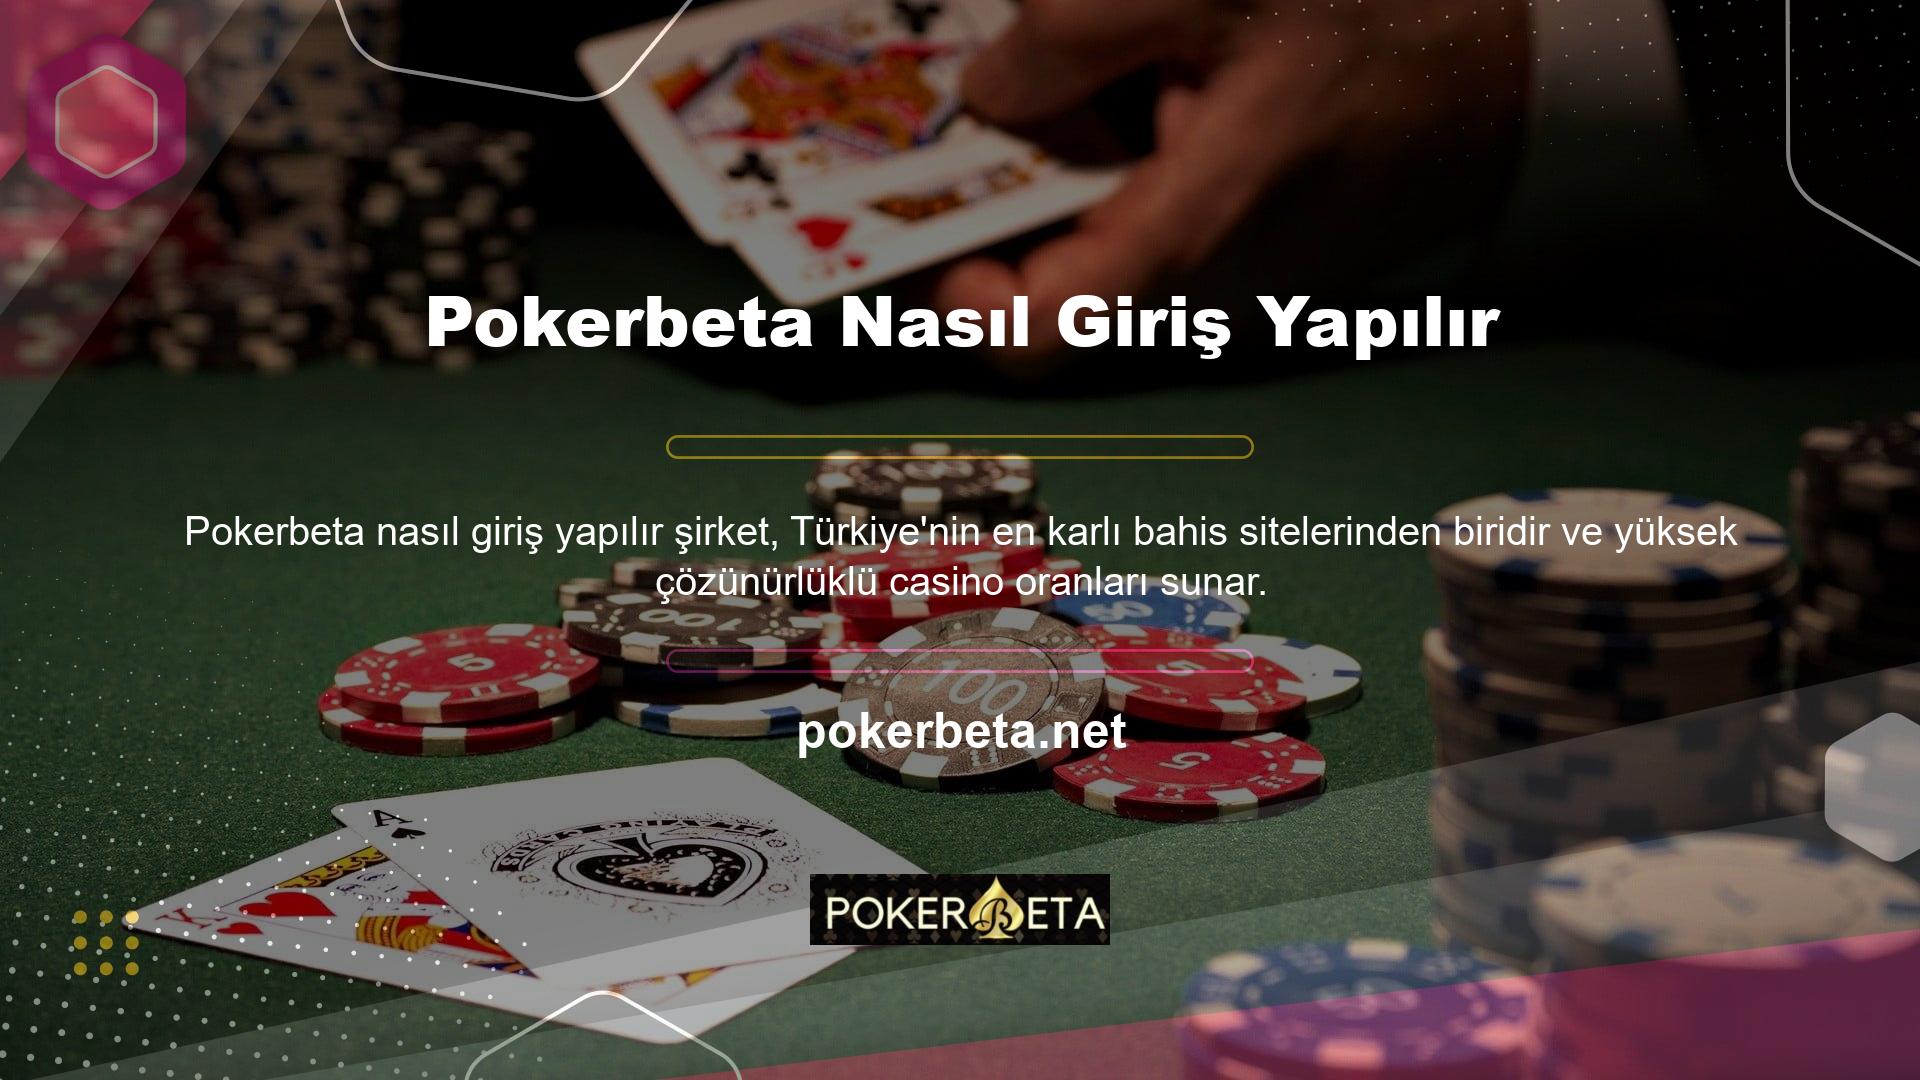 Pokerbeta TV seçeneği kupon yarışmalarını 360p, 720p, 1080p ve daha birçok video seçeneğinde izlemenizi sağlar